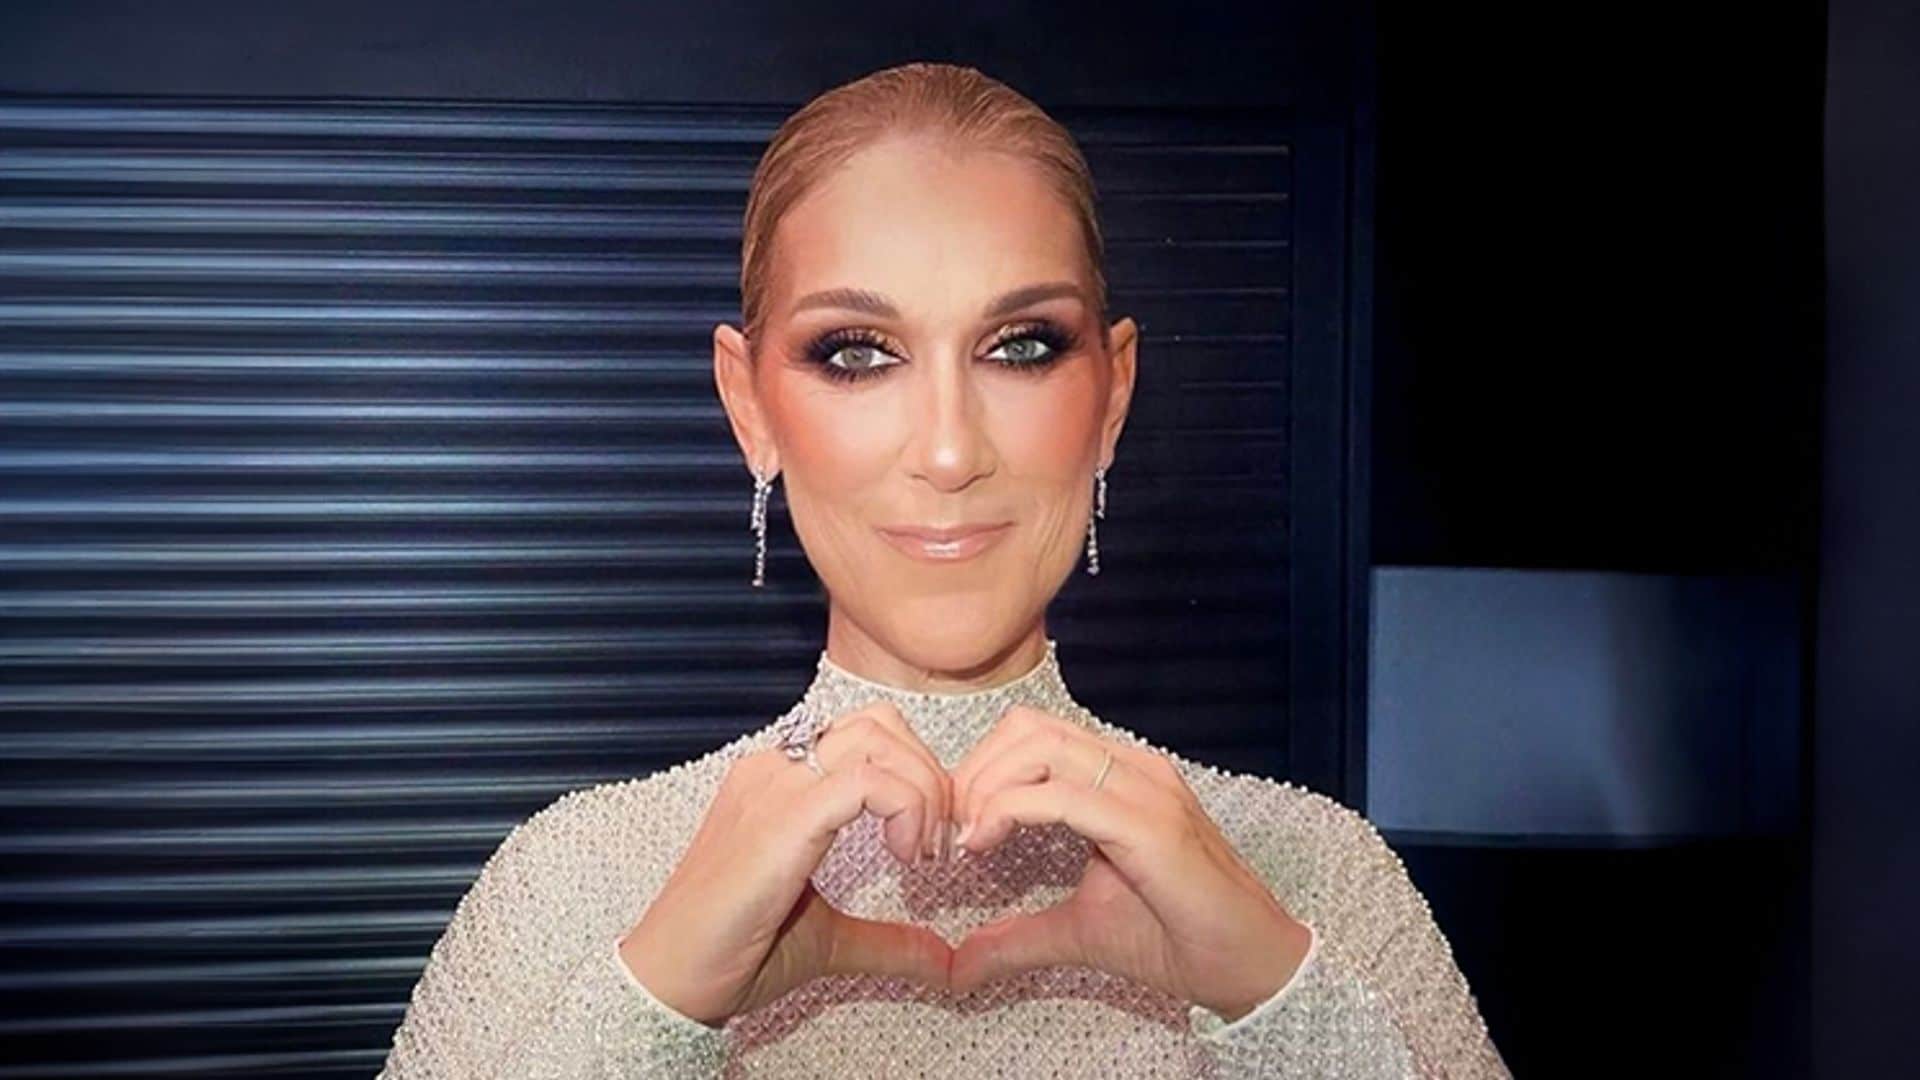 Las emocionantes palabras de Céline Dion tras su épica actuación en París a pesar de su enfermedad: ‘Mi corazón está con vosotros’